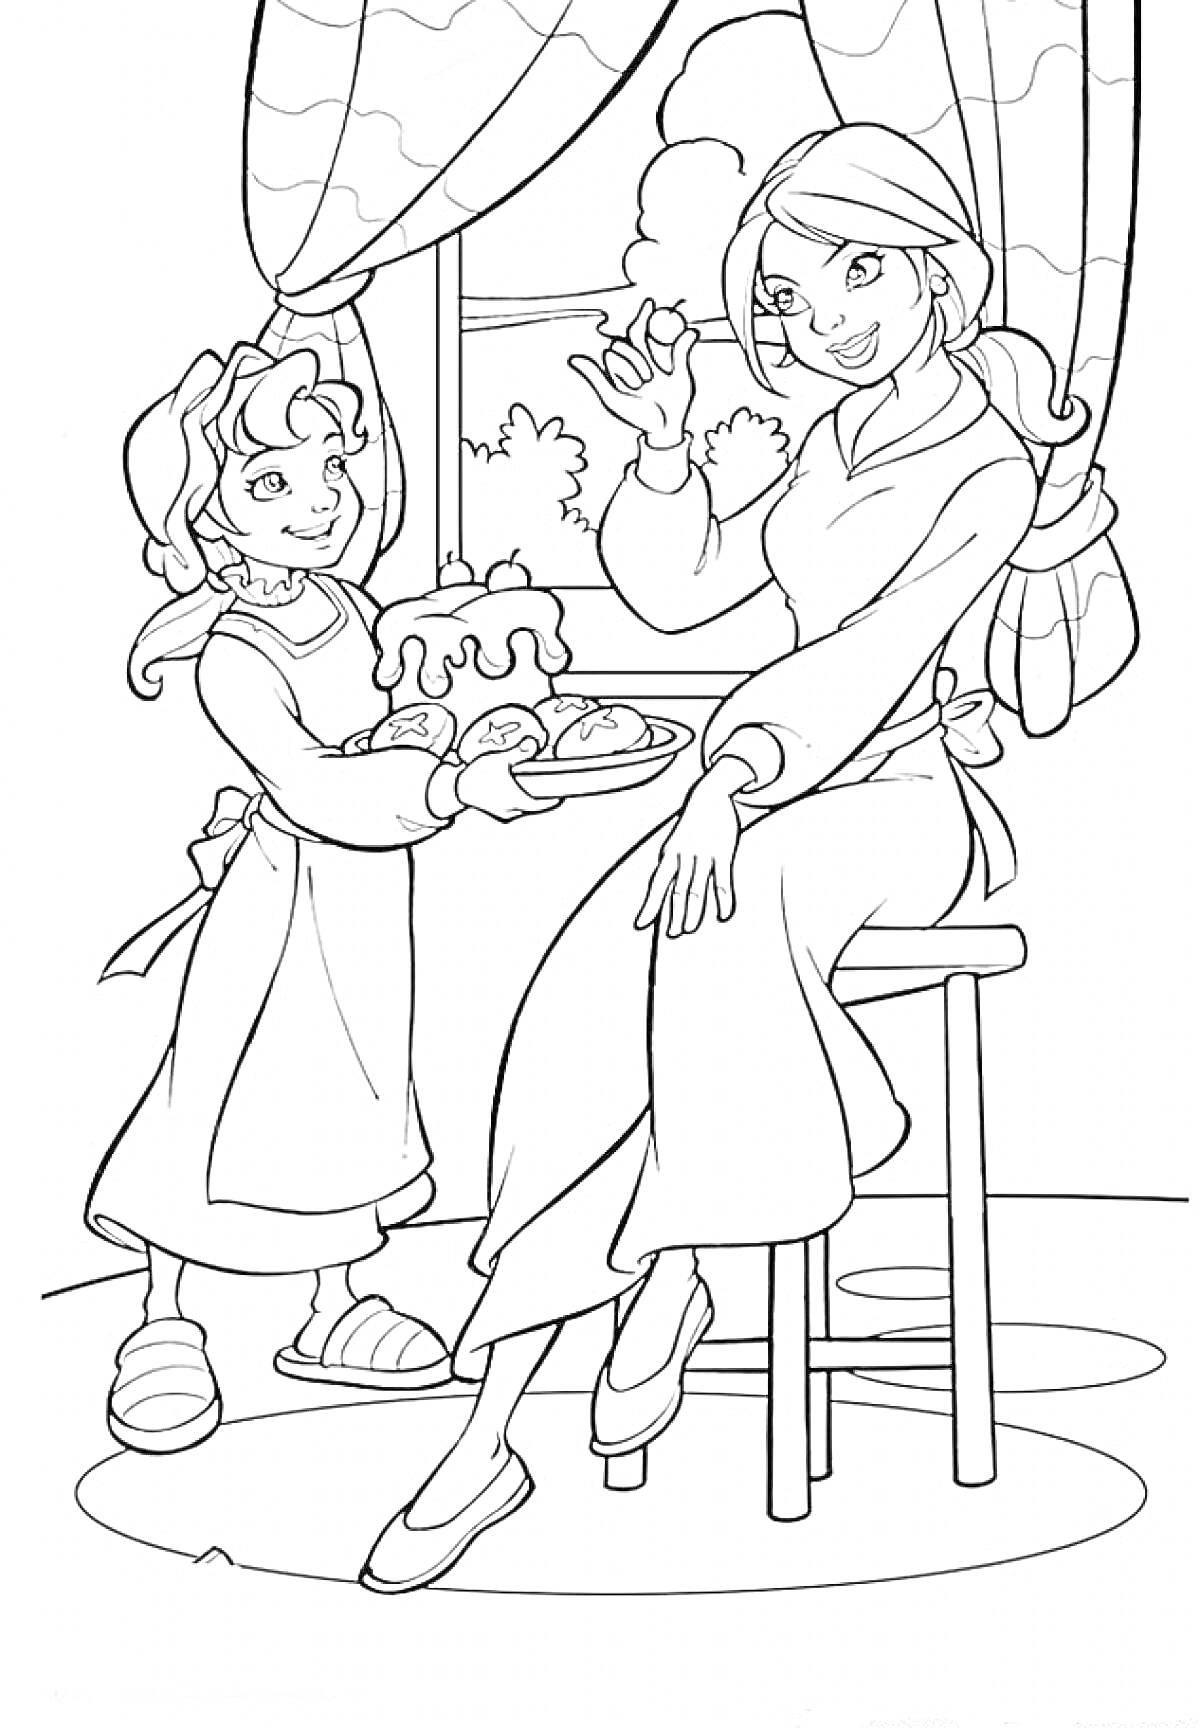 Мама и дочка на кухне у окна: дочка подает еду маме, мама сидит на высоком стуле, окно с занавесками, за окном зелёные деревья